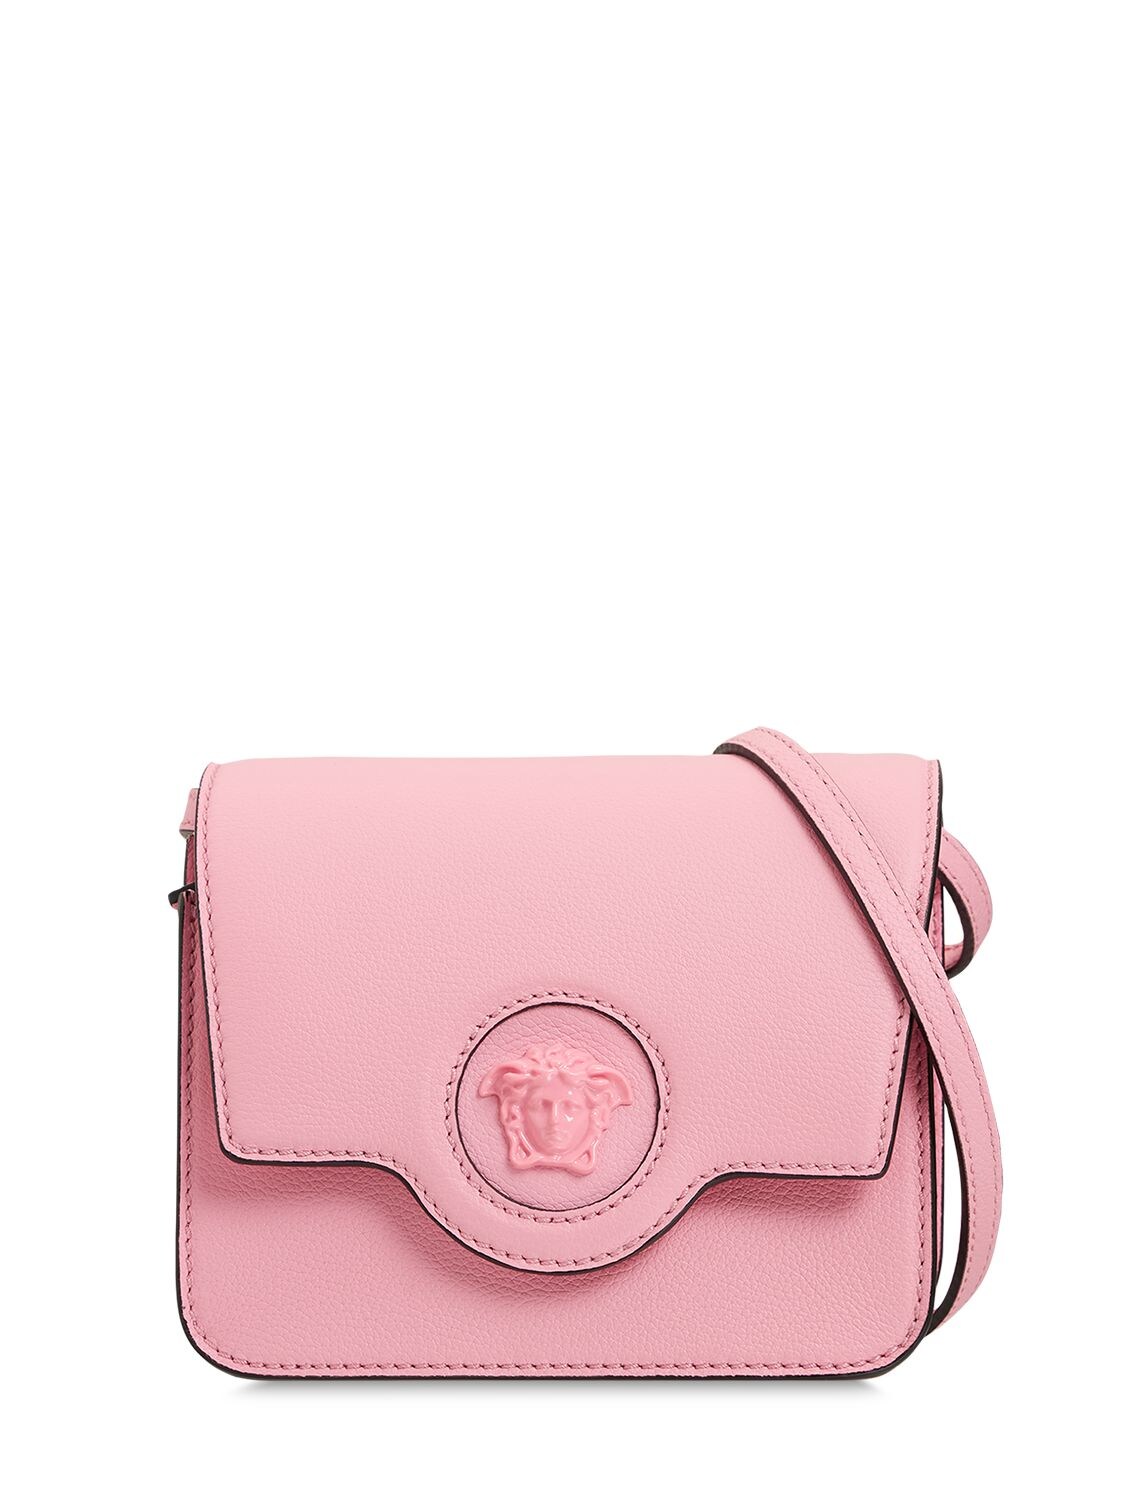 Versace Medusa Leather Shoulder Bag In Pink